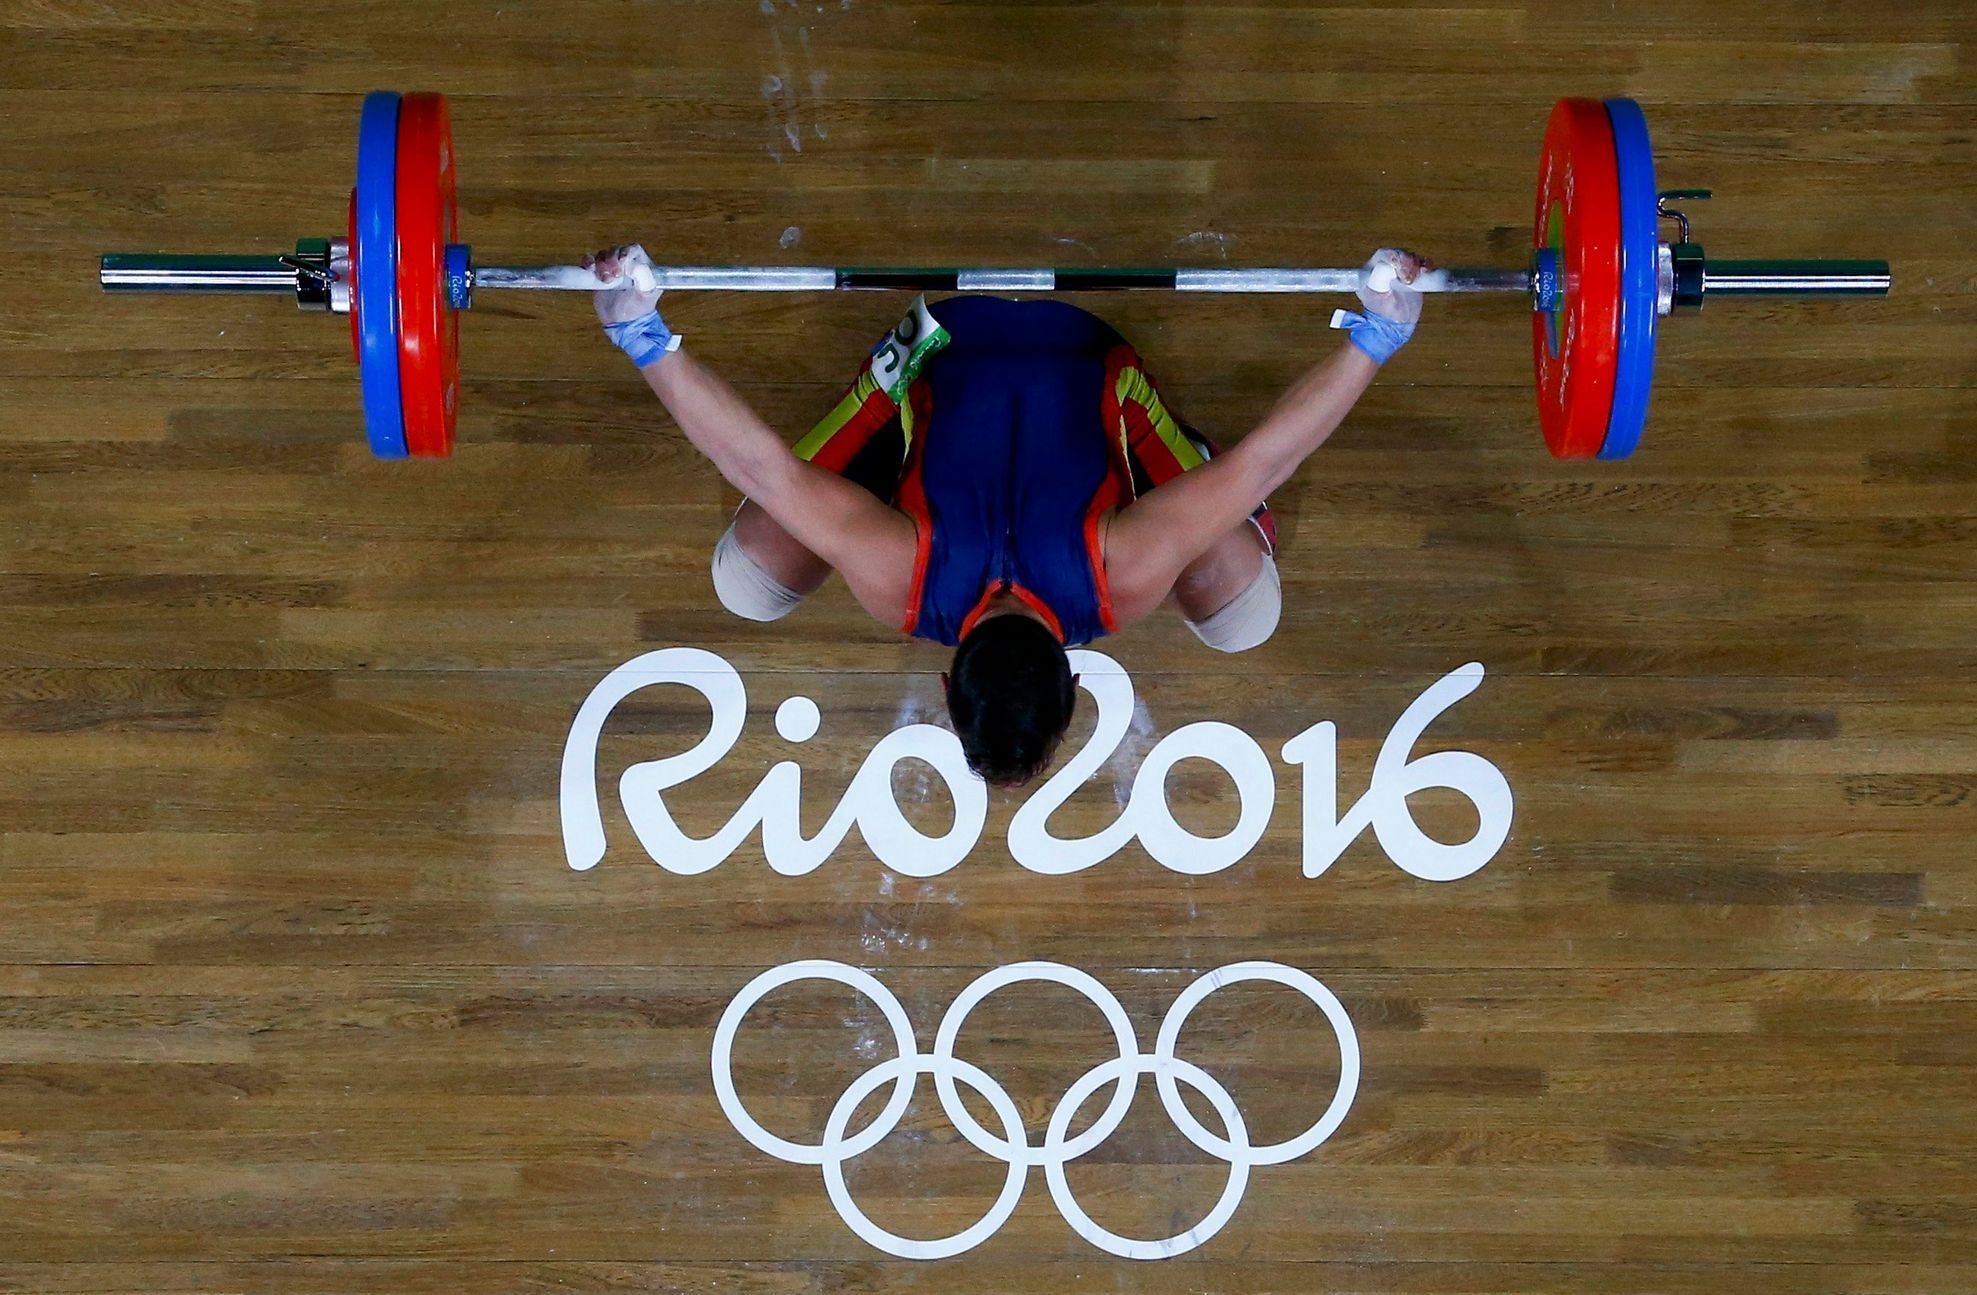 OH 2016, vzpírání (do 56kg): Josue Garcia Brachi  (Španělsko)